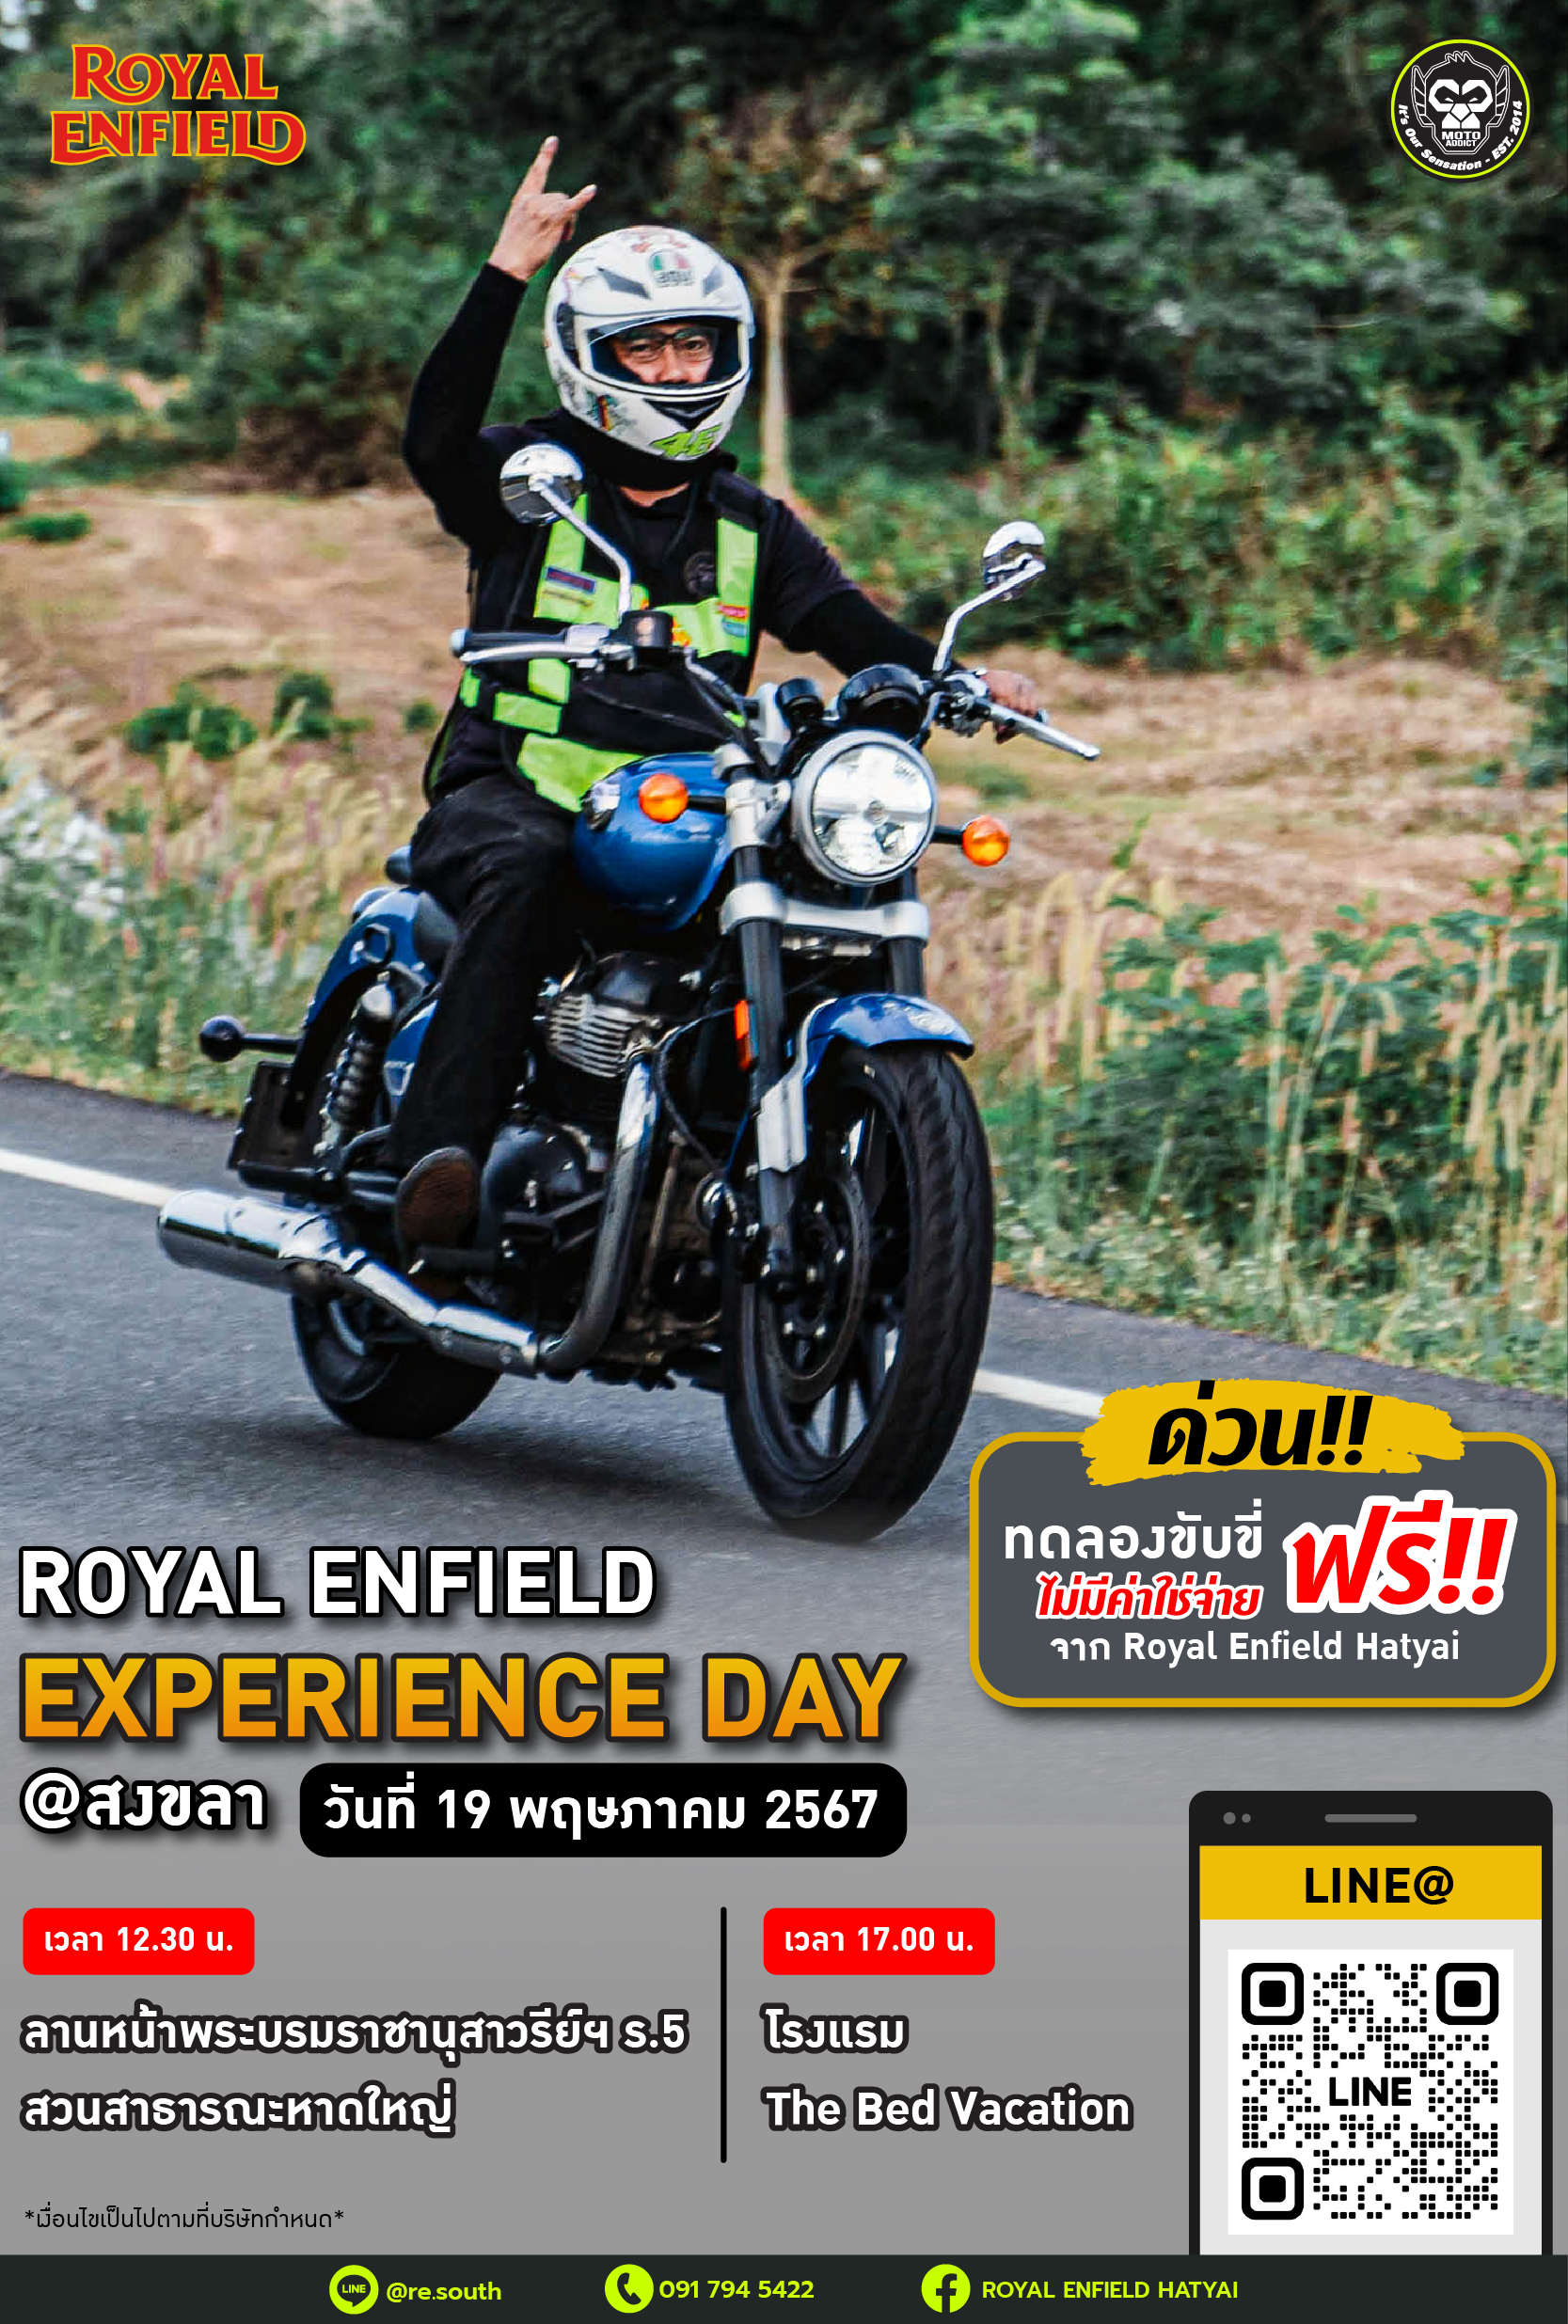 Royal Enfield Experience Day ขอเชิญร่วมทดลองขับขี่ รถจักรยานยนต์ Royal Enfield